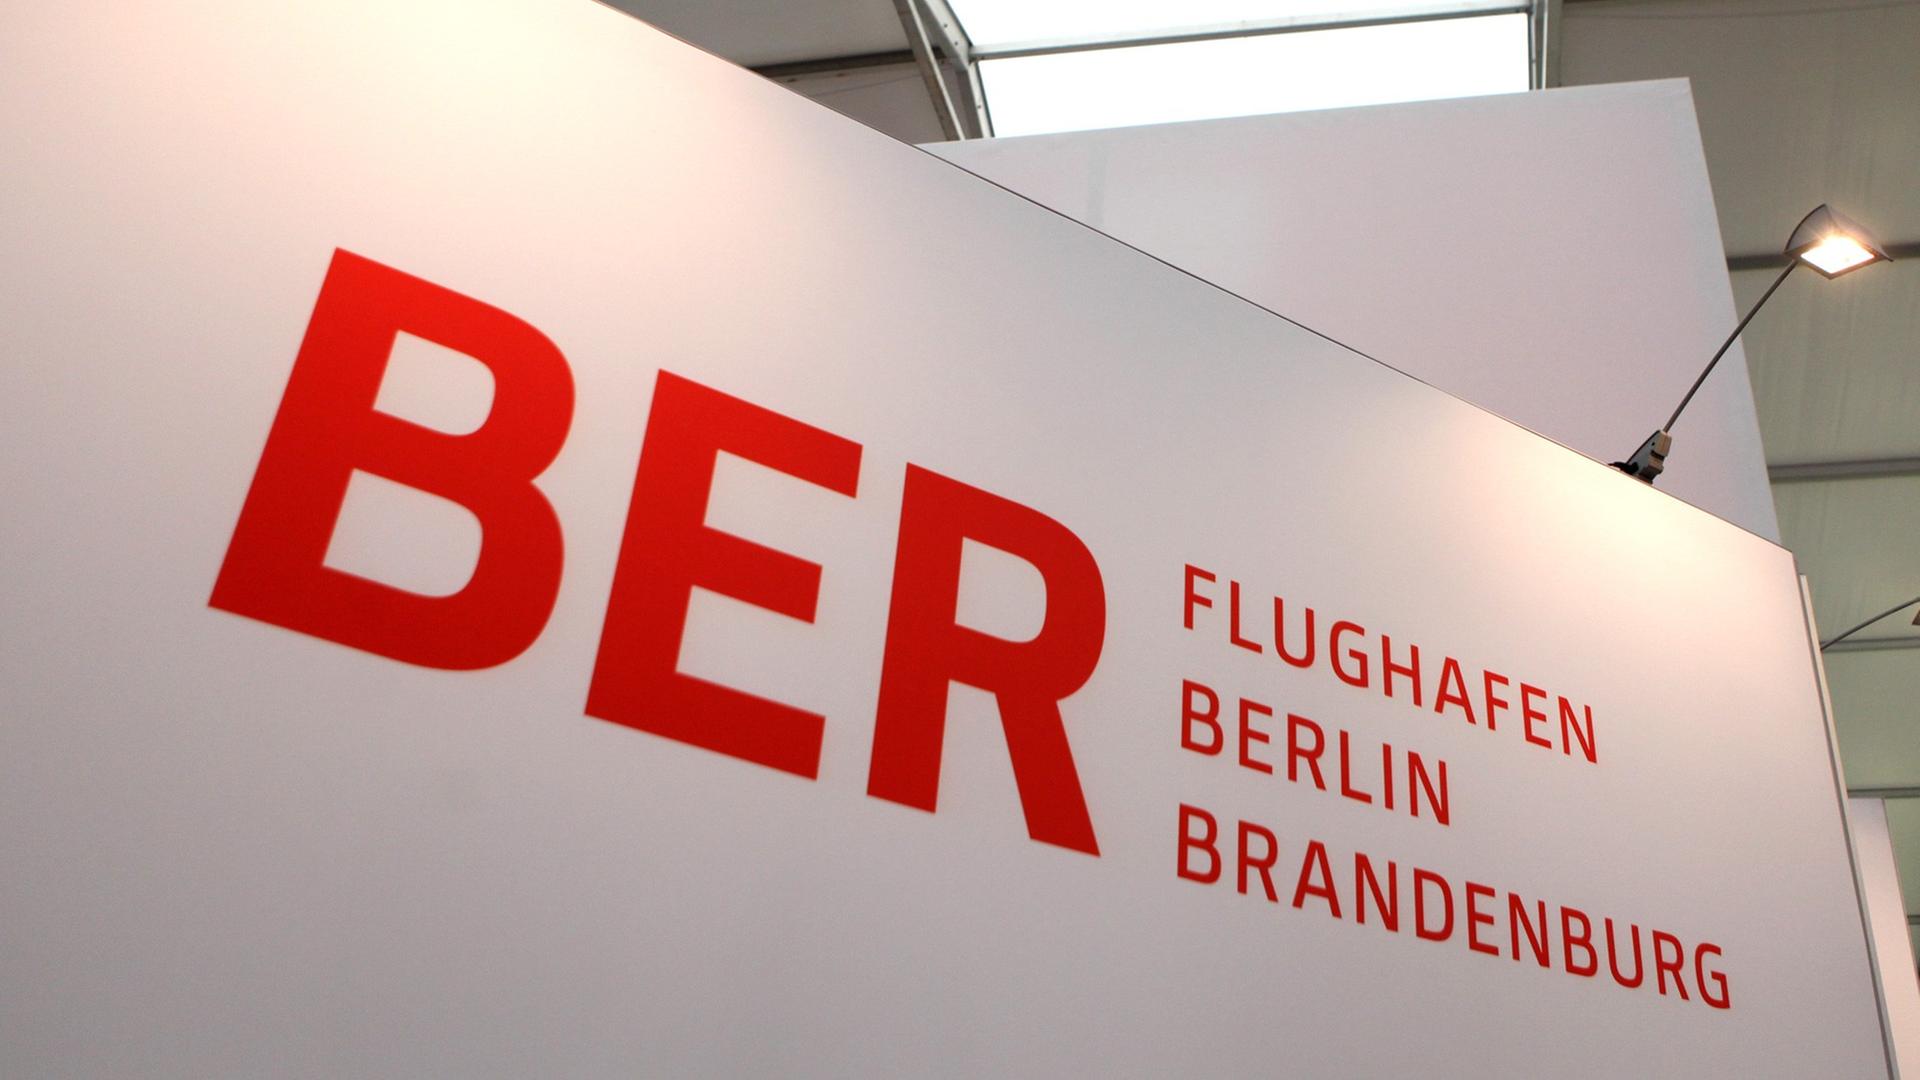 Ein Schild am Flughafen mit der Schrift "BER Flughafen Berlin Brandenburg"